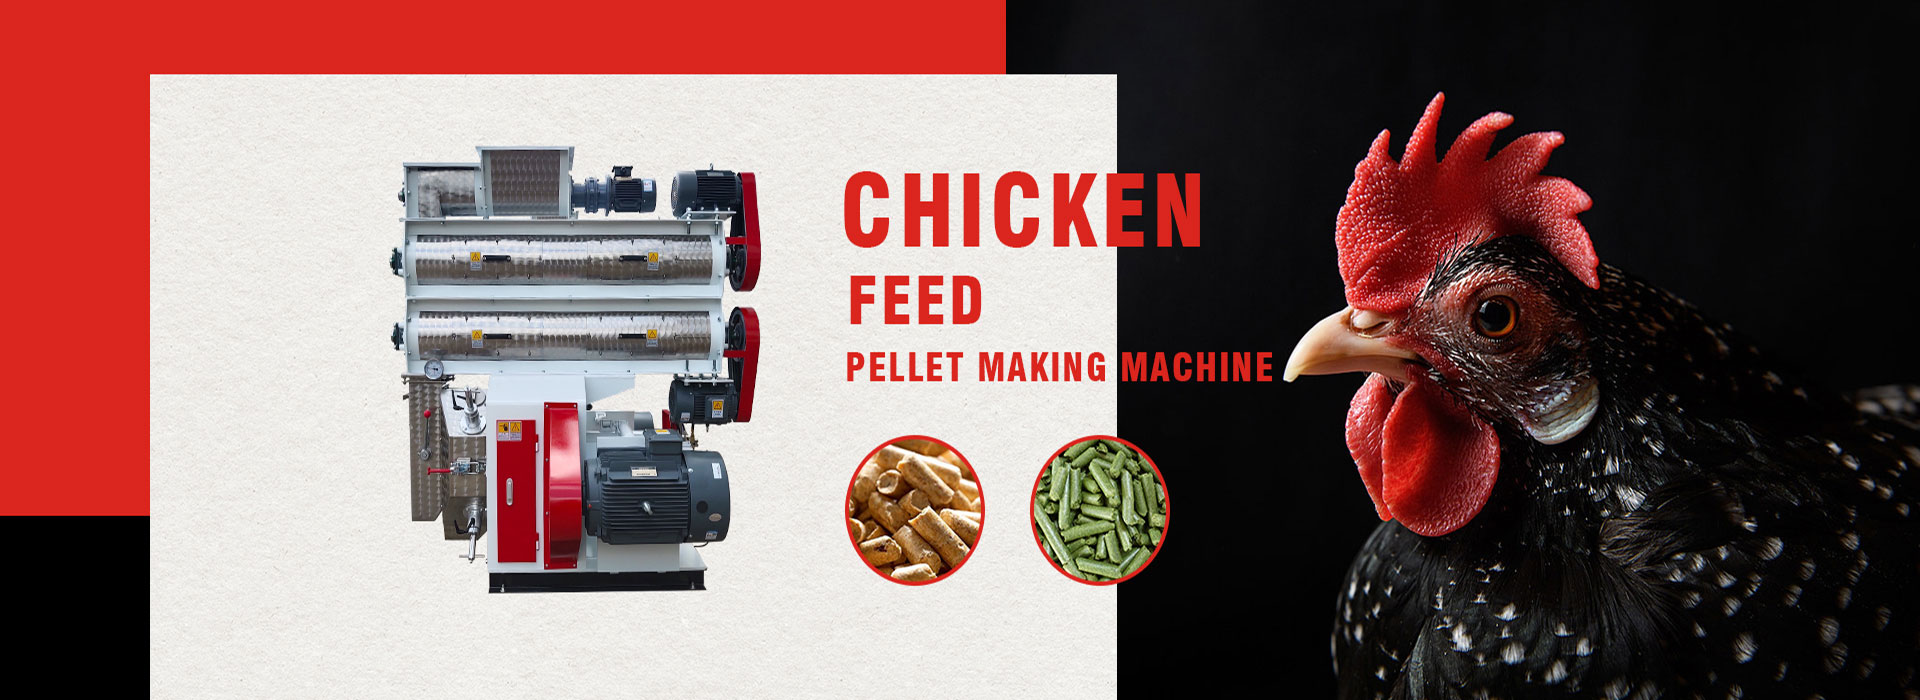 Chicken feed pellet machine